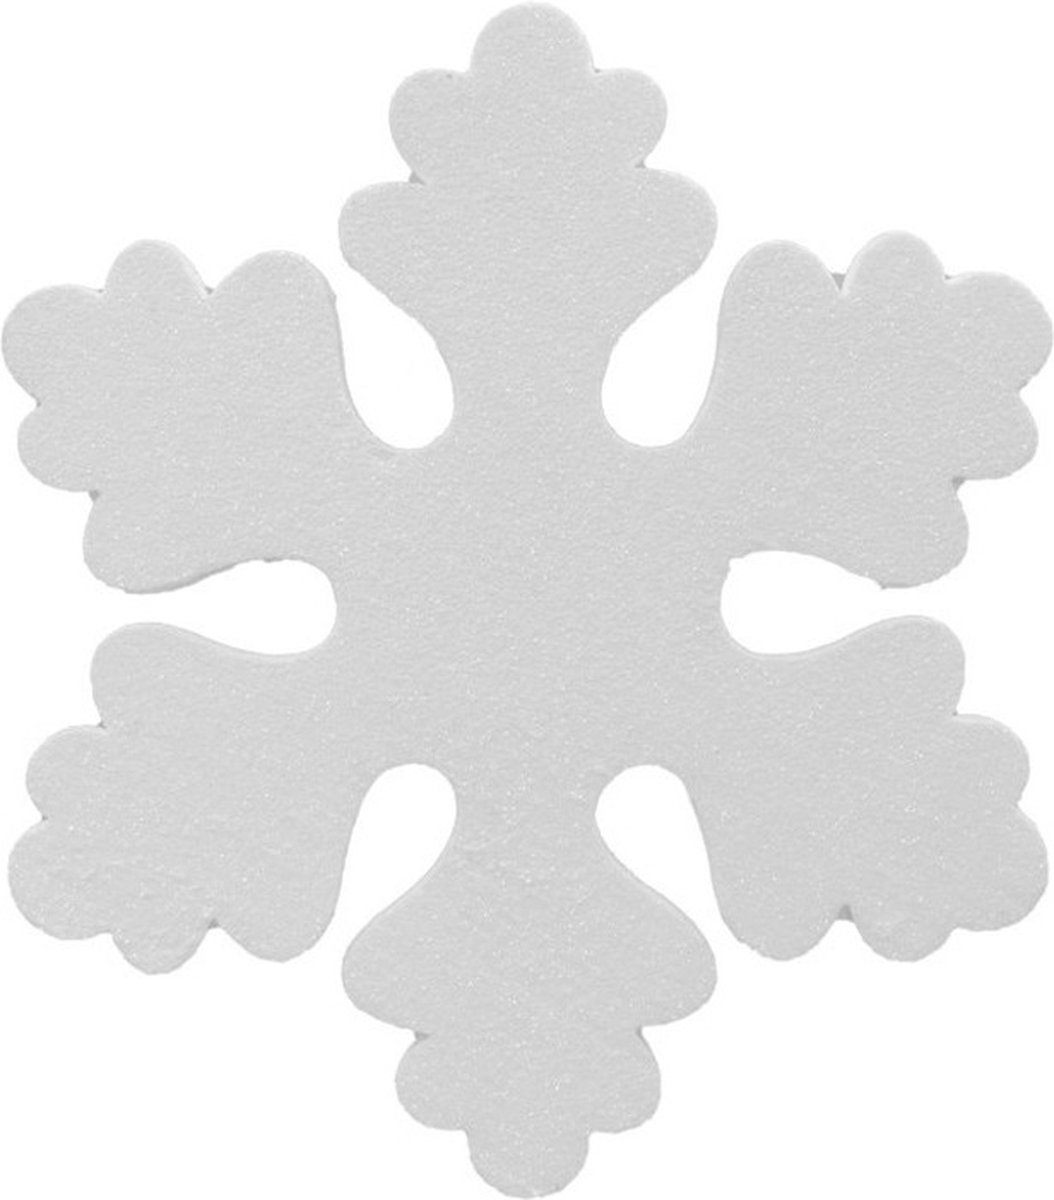 6x Witte decoratie sneeuwvlok van foam 25 cm - Kerstversiering/kerstdecoratie sneeuwvlokken